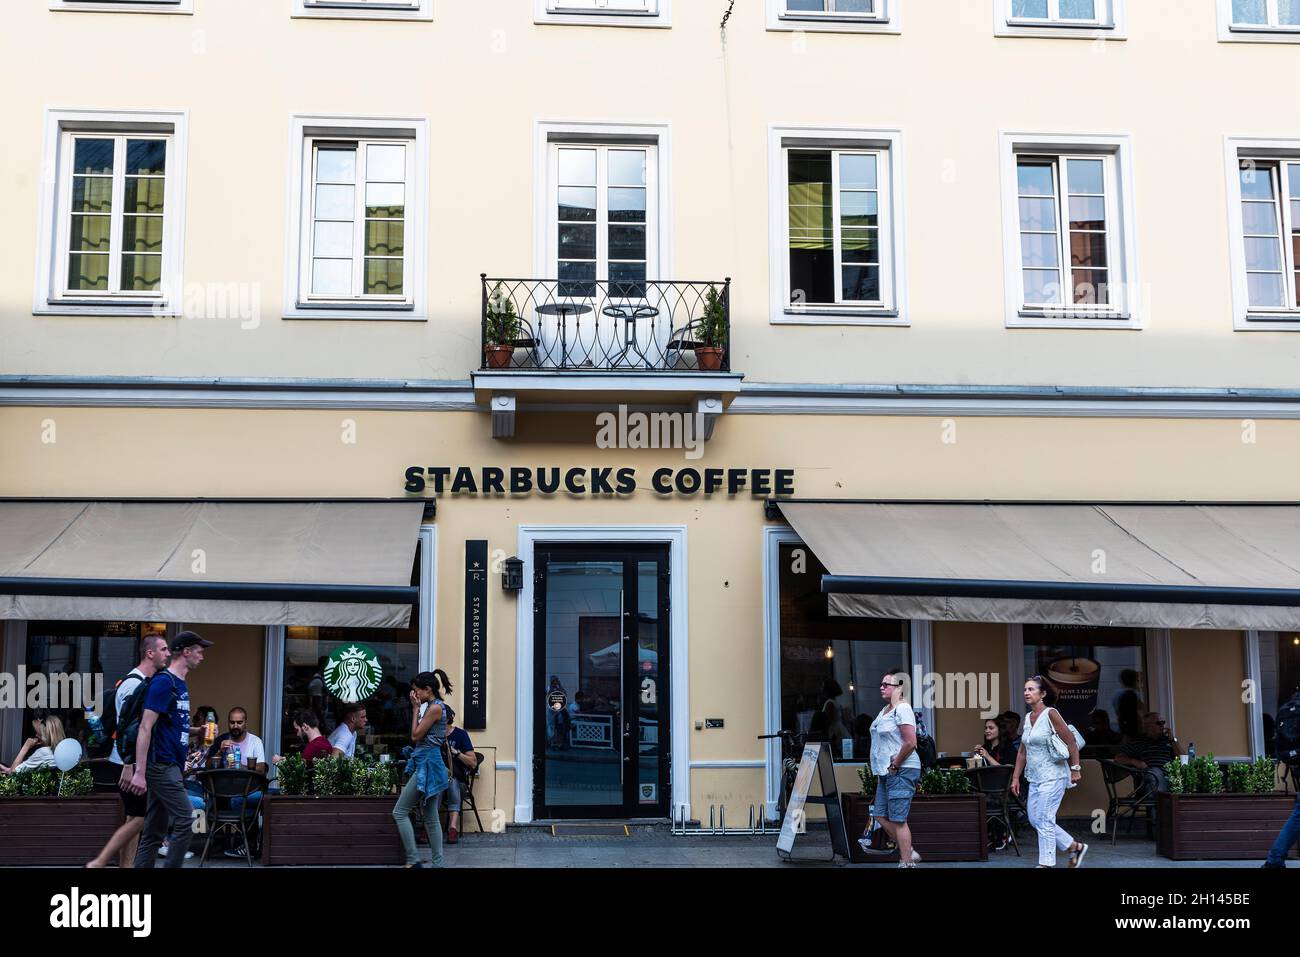 Varsovie, Pologne - 1er septembre 2018 : Nowy Swiat, rue commerçante avec un café Starbucks et des gens autour de la vieille ville de Varsovie, Pologne Banque D'Images